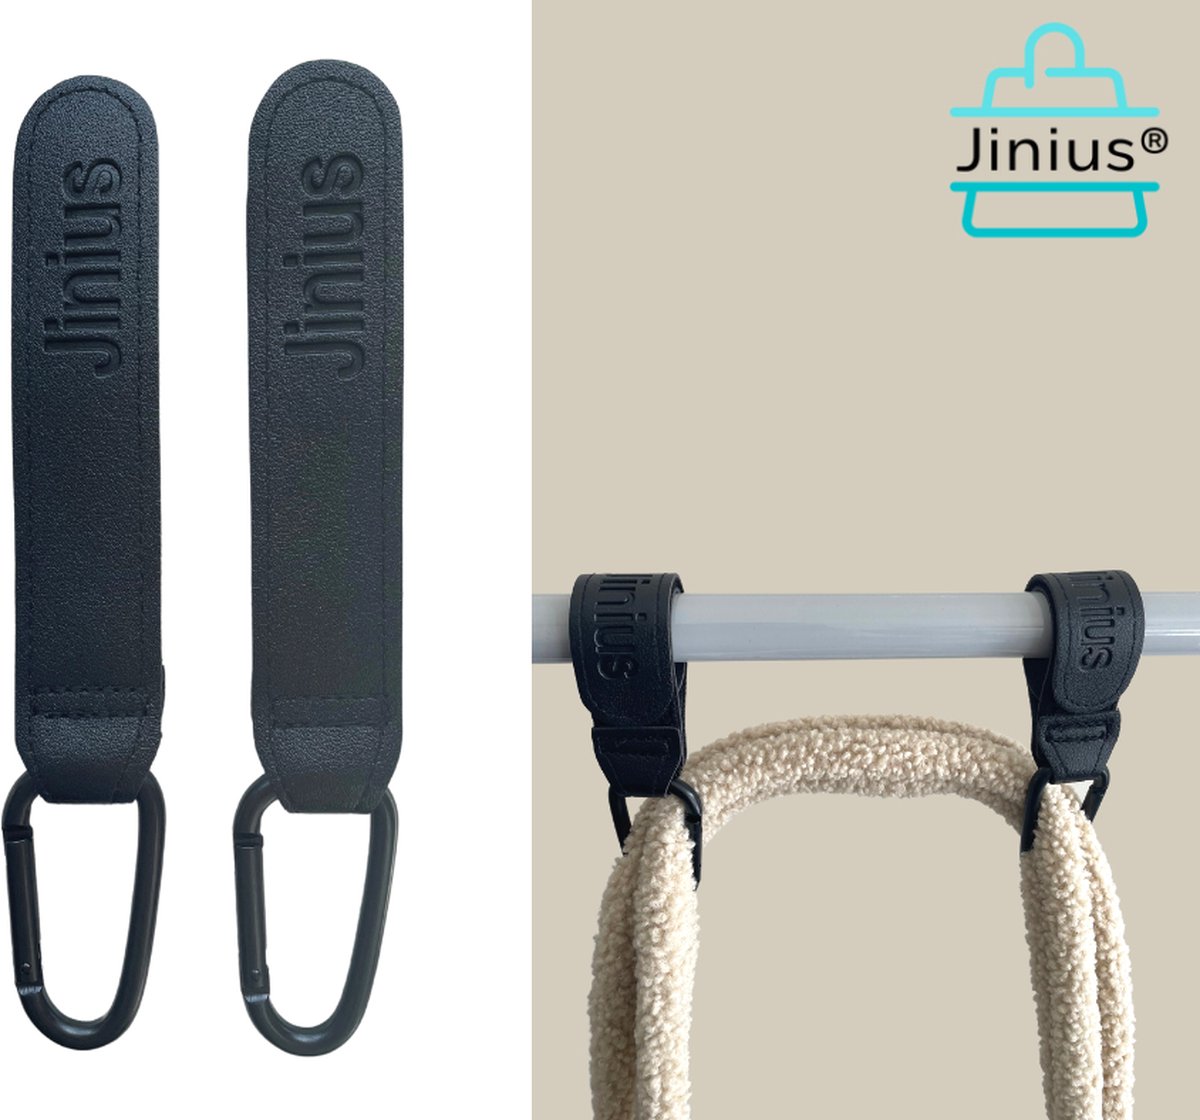 Jinius ® - Zwart - Buggy - Tassen Haak - Boodschappen haak - Stroller Hook - Kinderwagen tassenhaakjes - Haakjes voor tassen - Buggy haakjes - Set van 2 - Jinius